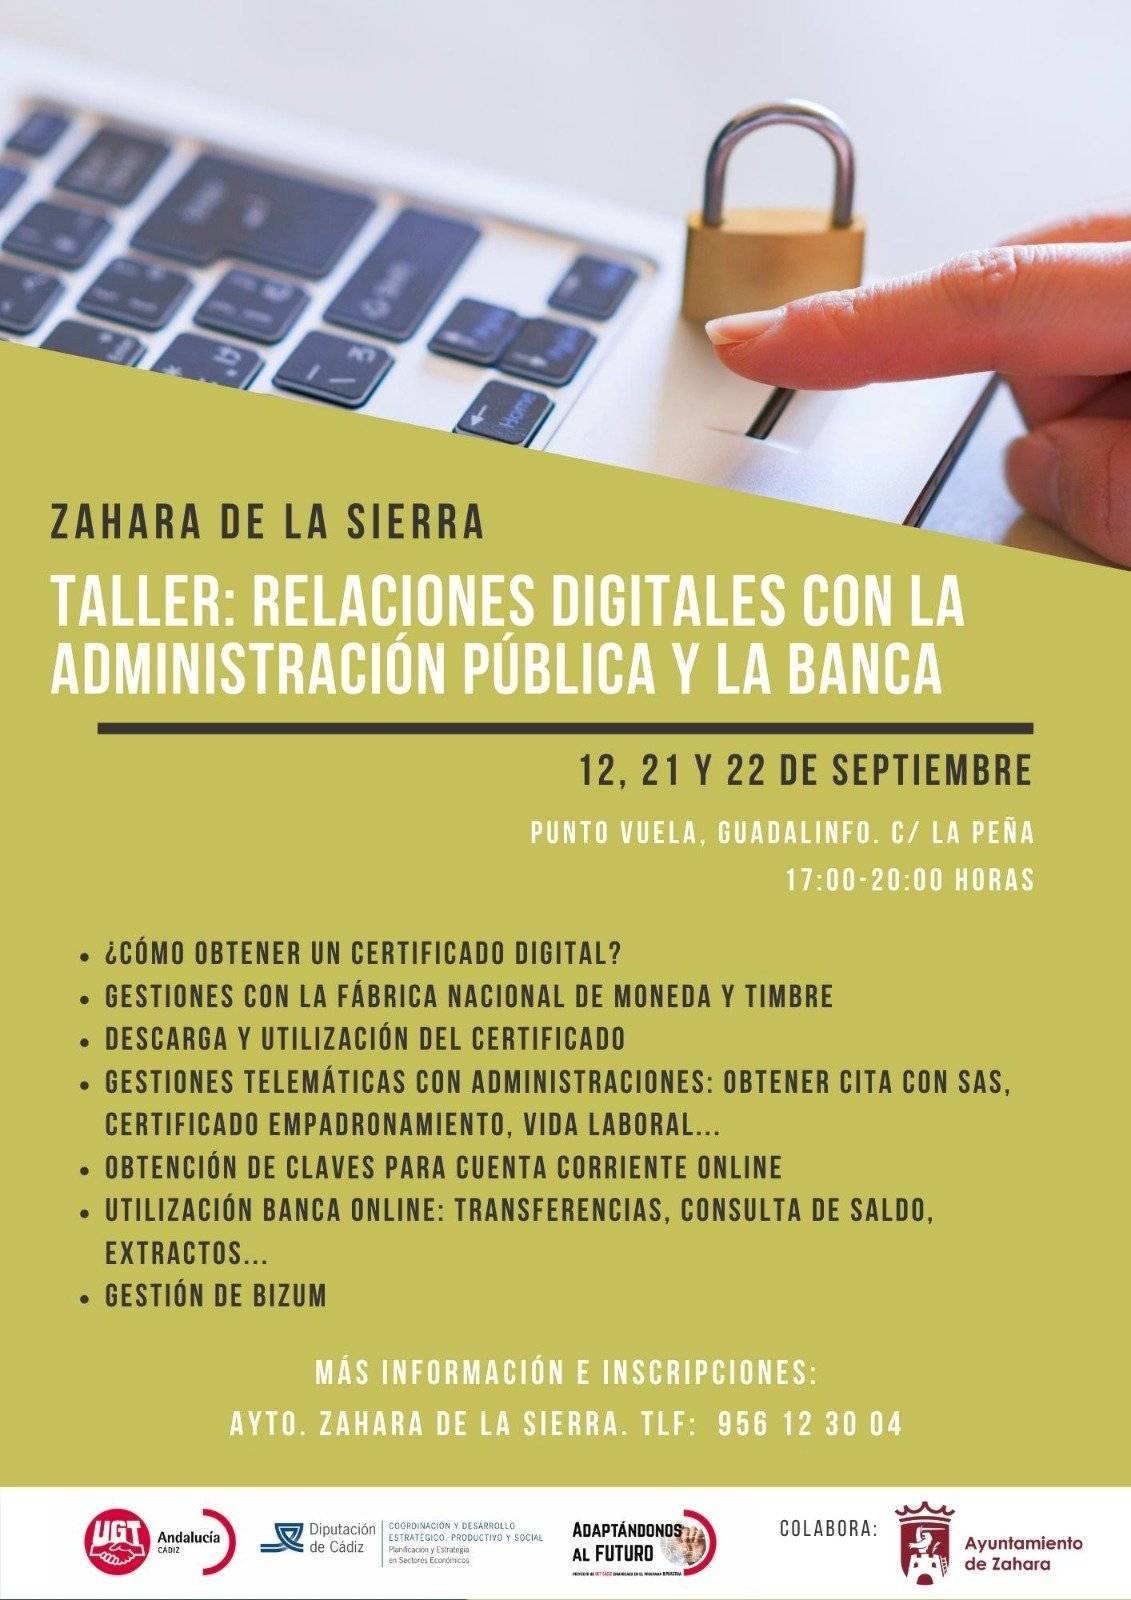 Taller de relaciones digitales con la administración pública y la banca (2022) - Zahara de la Sierra (Cádiz)